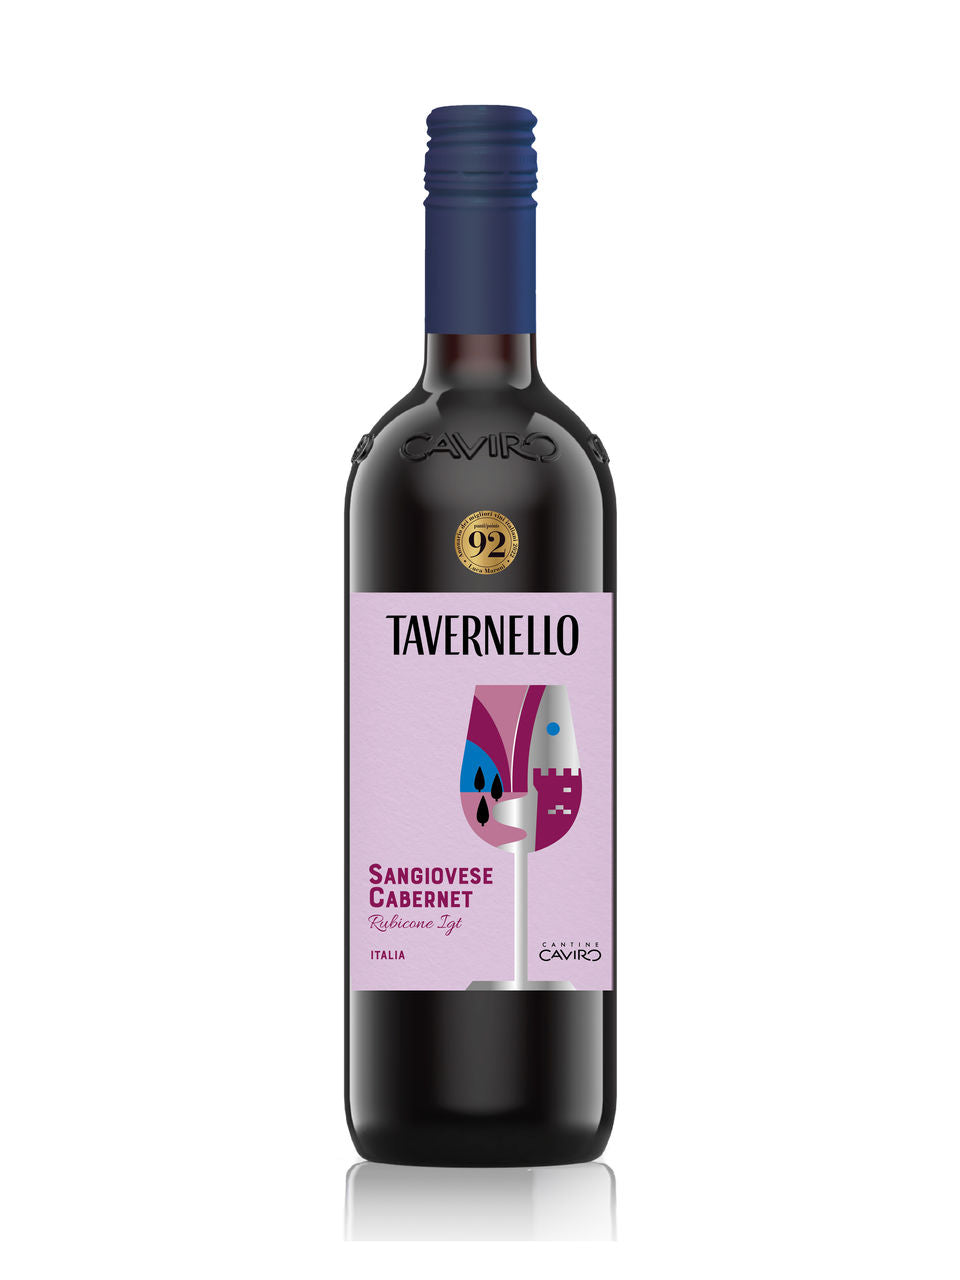 Tavernello, Sangiovese Cabernet 750 ml bottle